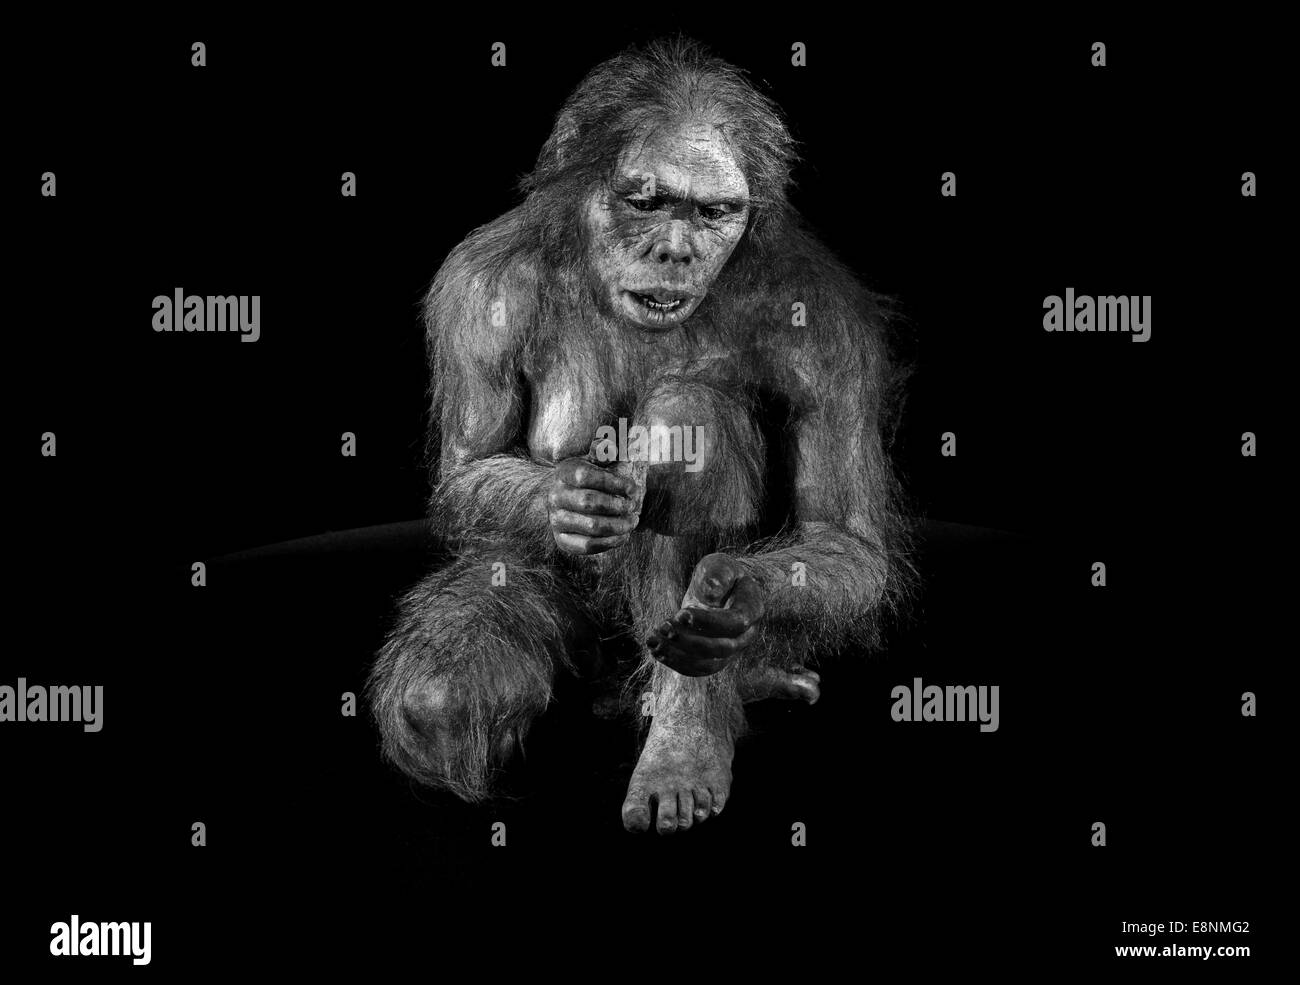 Espagne, Burgos : amour humain de "Lucy" (Australopithecus afarensis) dans le Musée de l'évolution humaine en version noir et blanc Banque D'Images